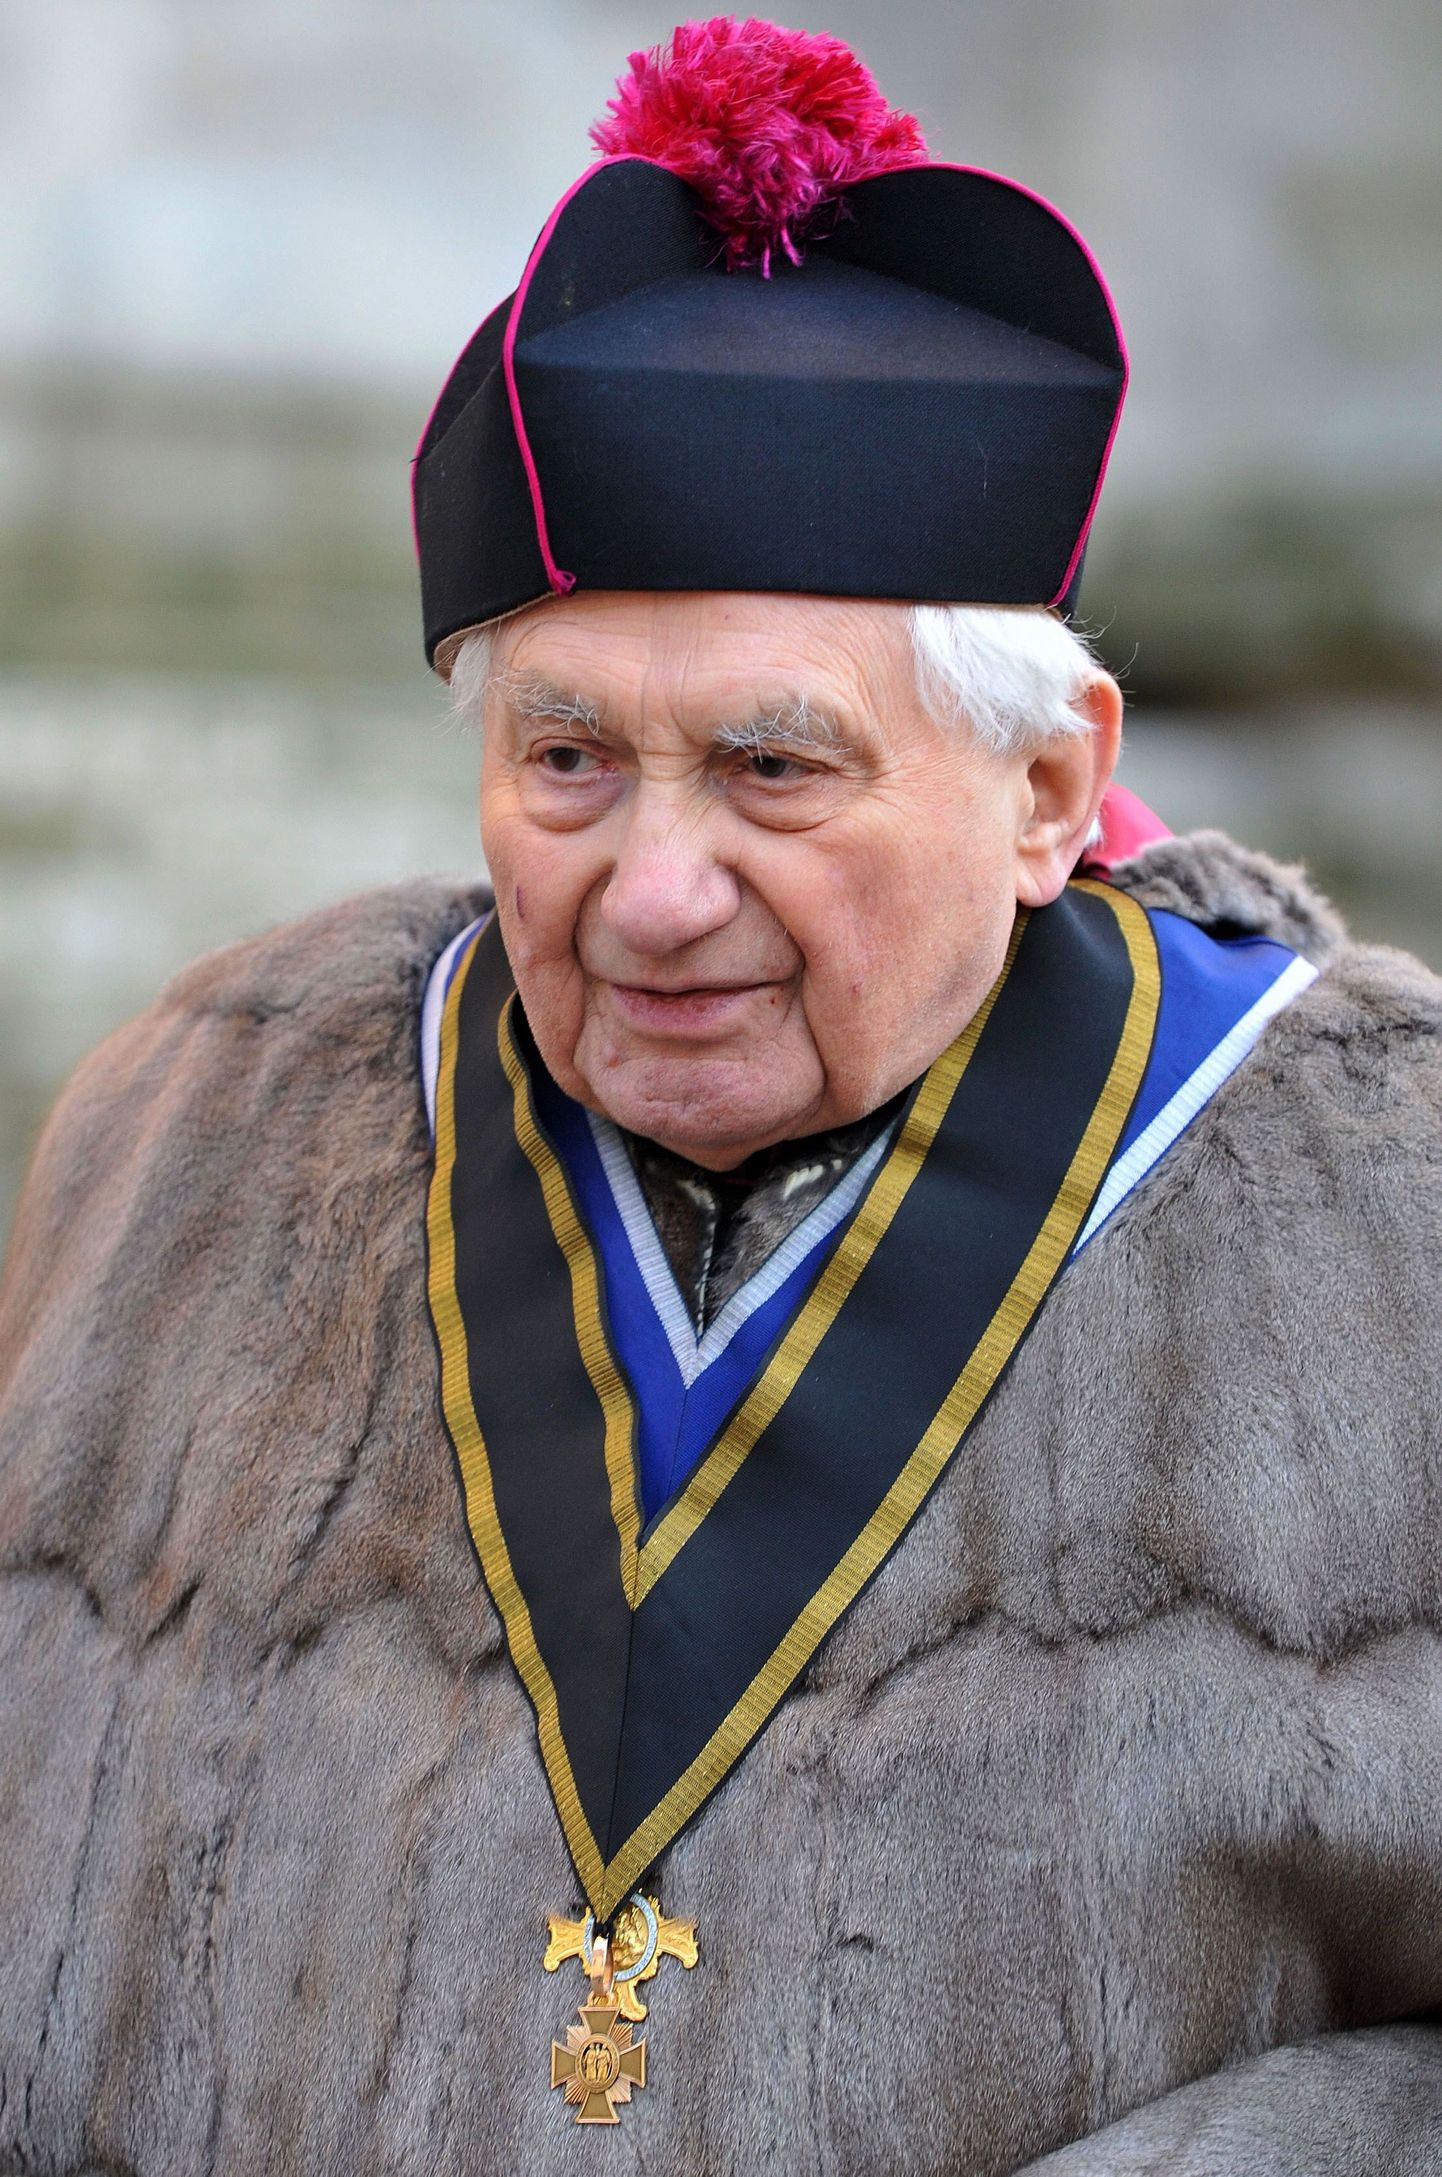 Georg Ratzinger